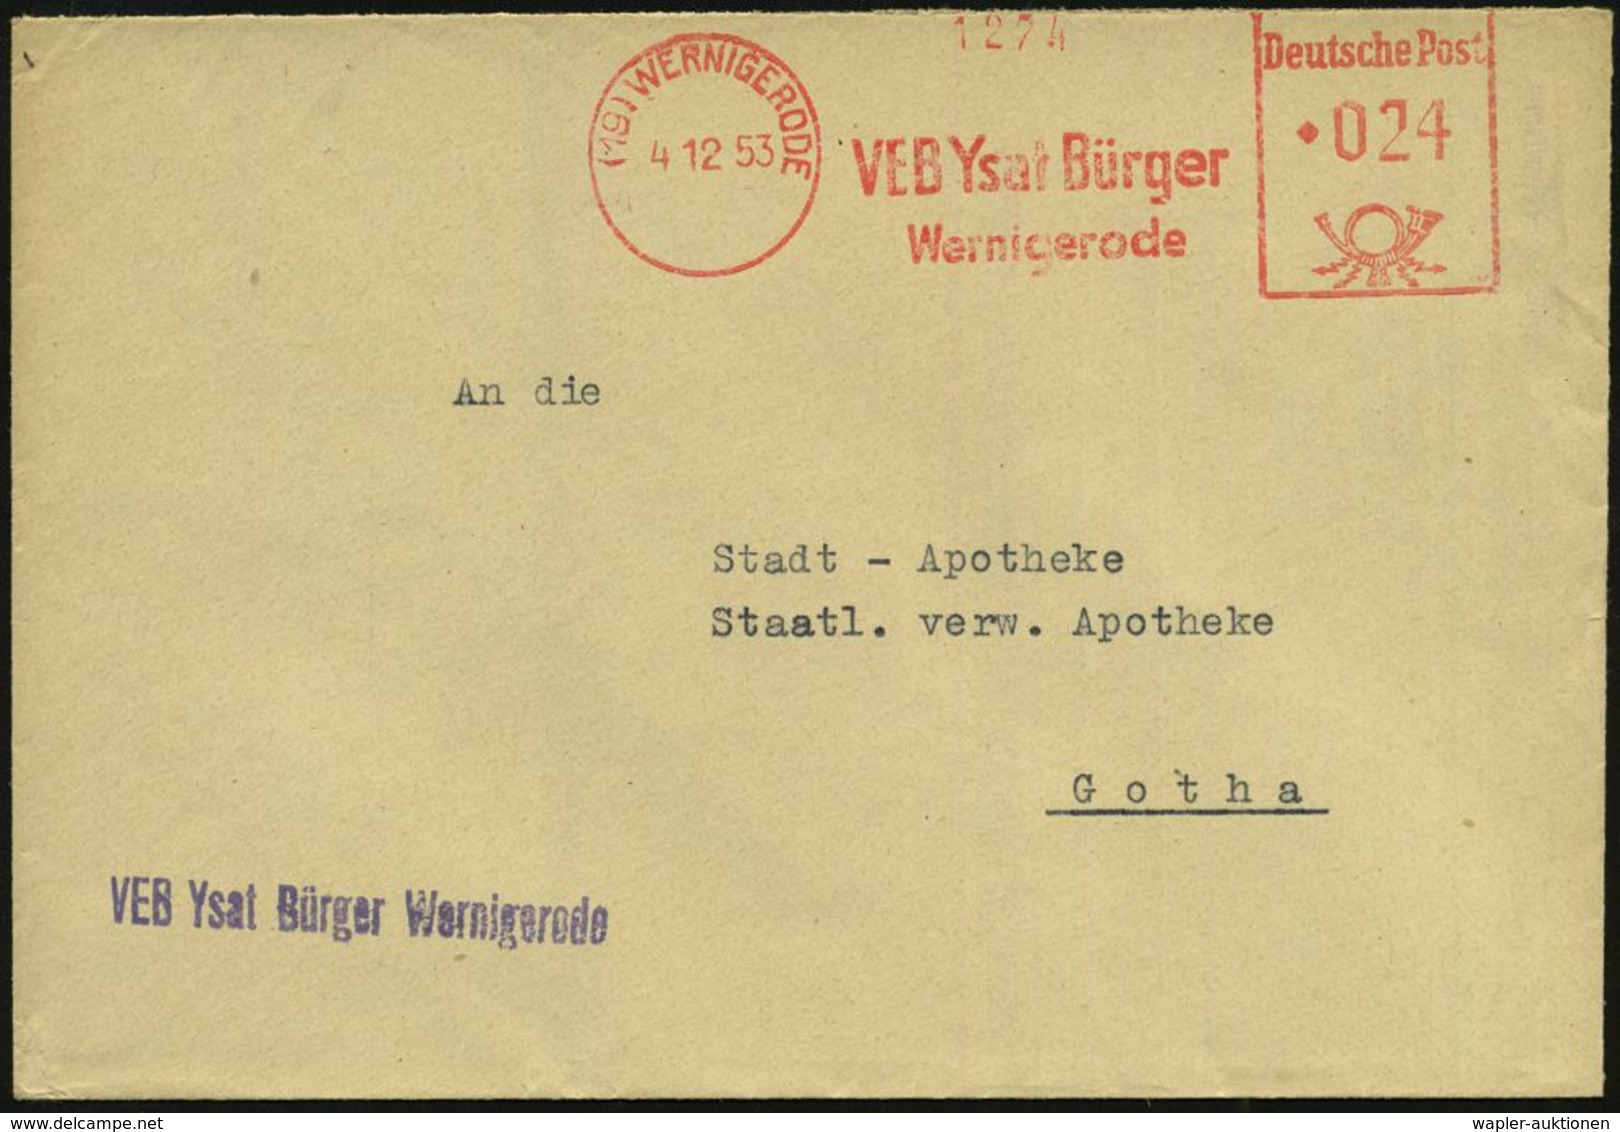 HOMÖOPATHIE / HEILPFLANZEN : (19) WERNIGERODE/ VEB Ysat Bürger.. 1953 (4.12.) AFS + Viol. Abs.-1L: VEB Ysat Bürger... Fe - Medicina